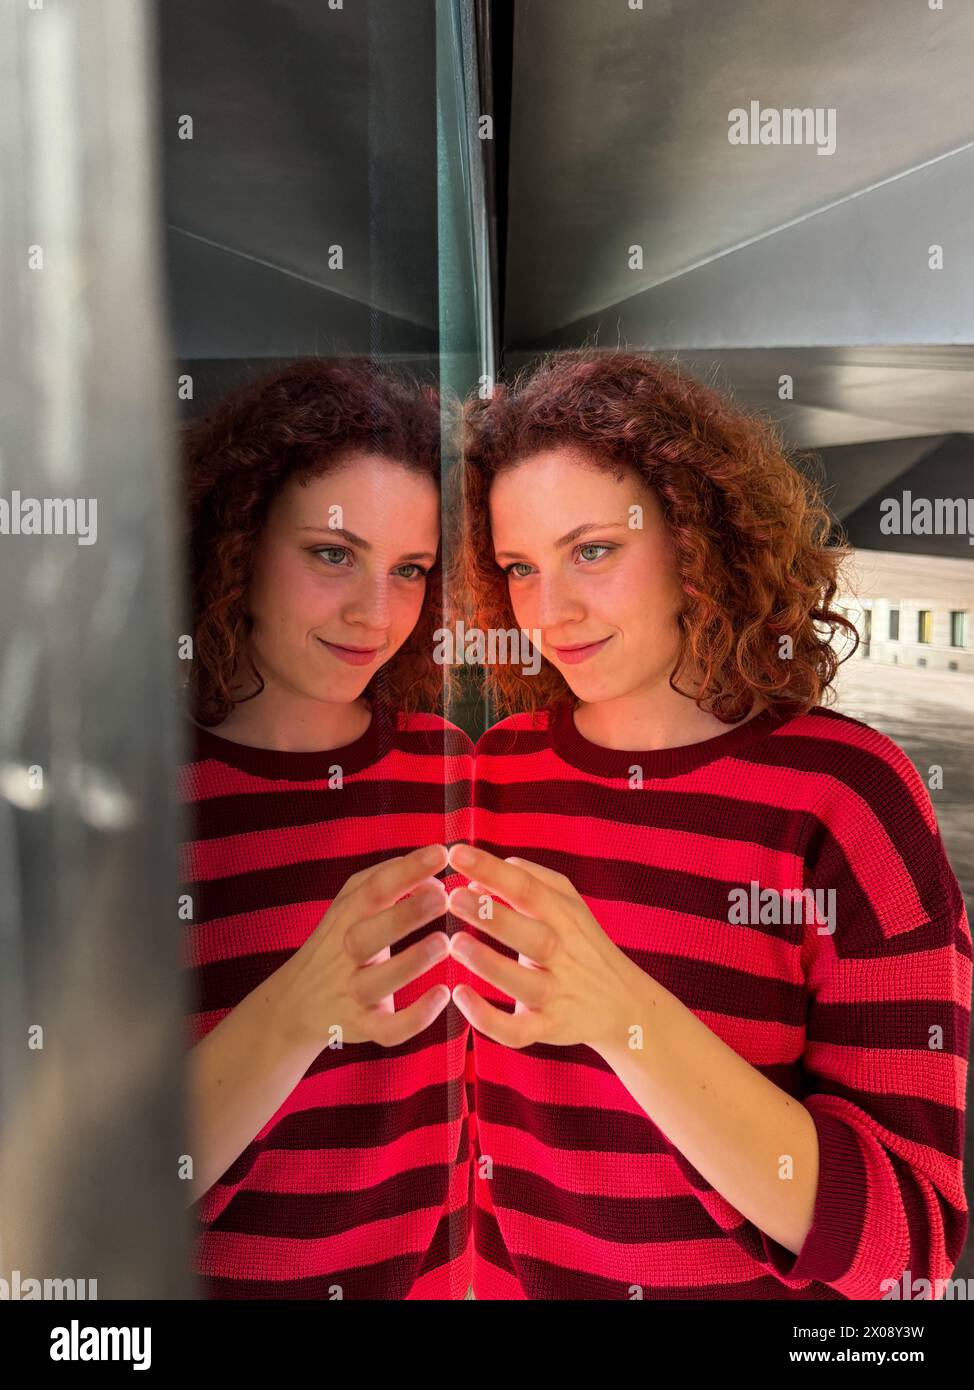 Una donna rossa con un pullover a righe rosse e nere si staglia su una superficie riflettente creando un'illusione simmetrica Foto Stock